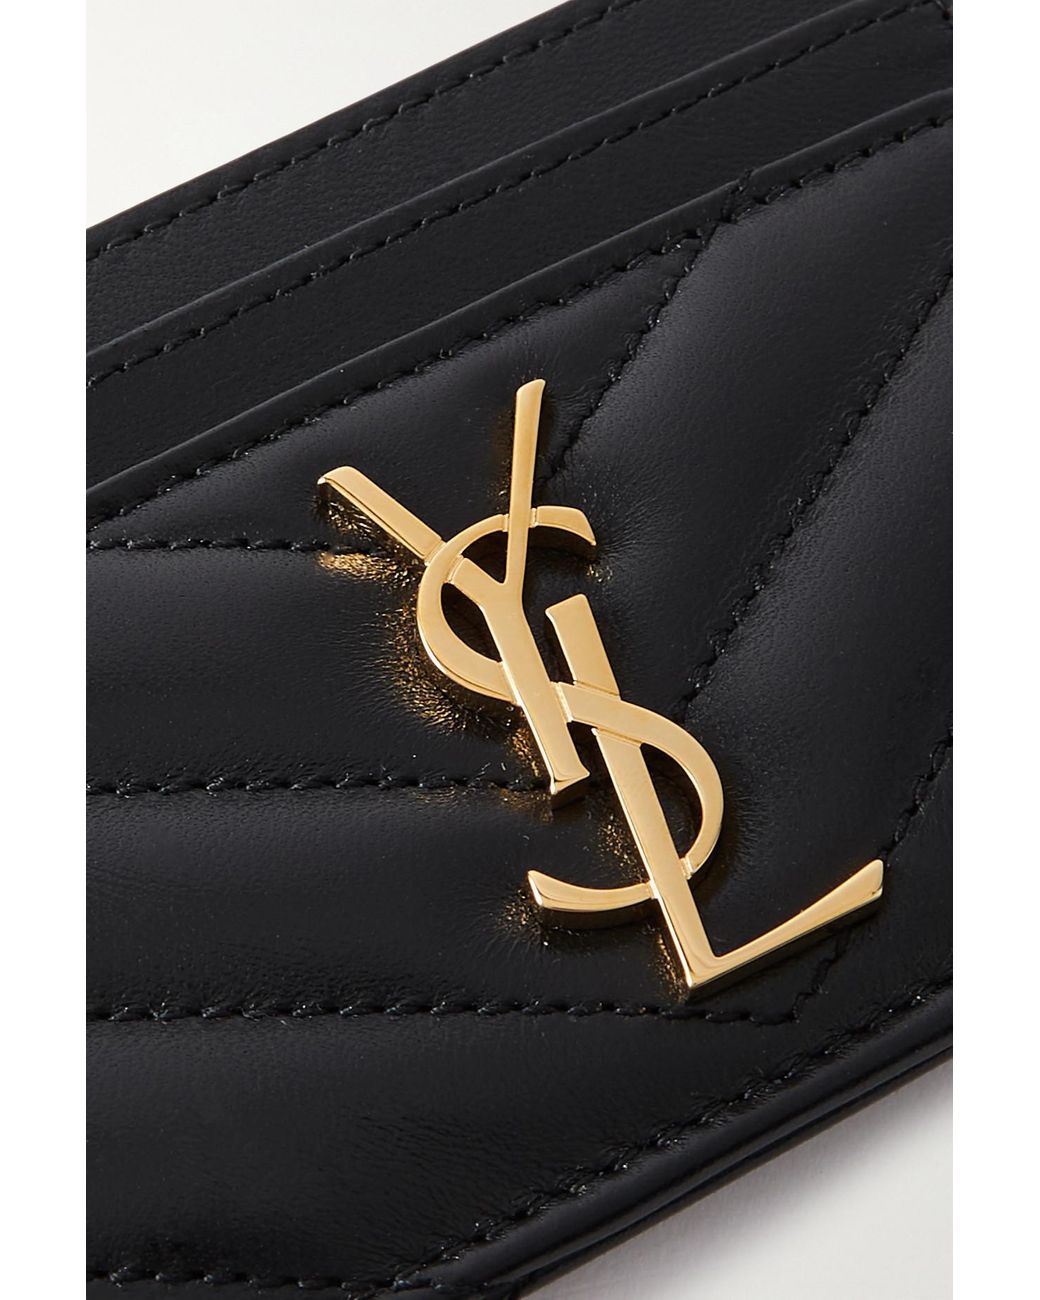 Louis Vuitton Card Holder Net A Porter